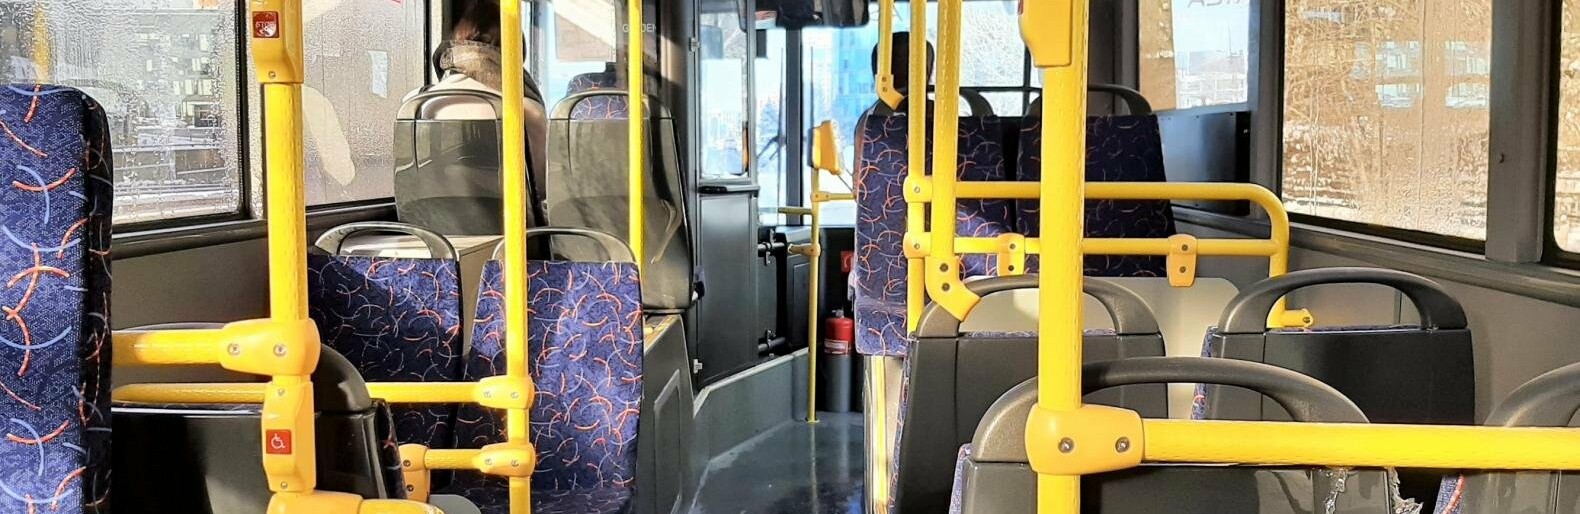 В автобусах Алматы появились специалисты по контролю качества и ношению масок пассажирами